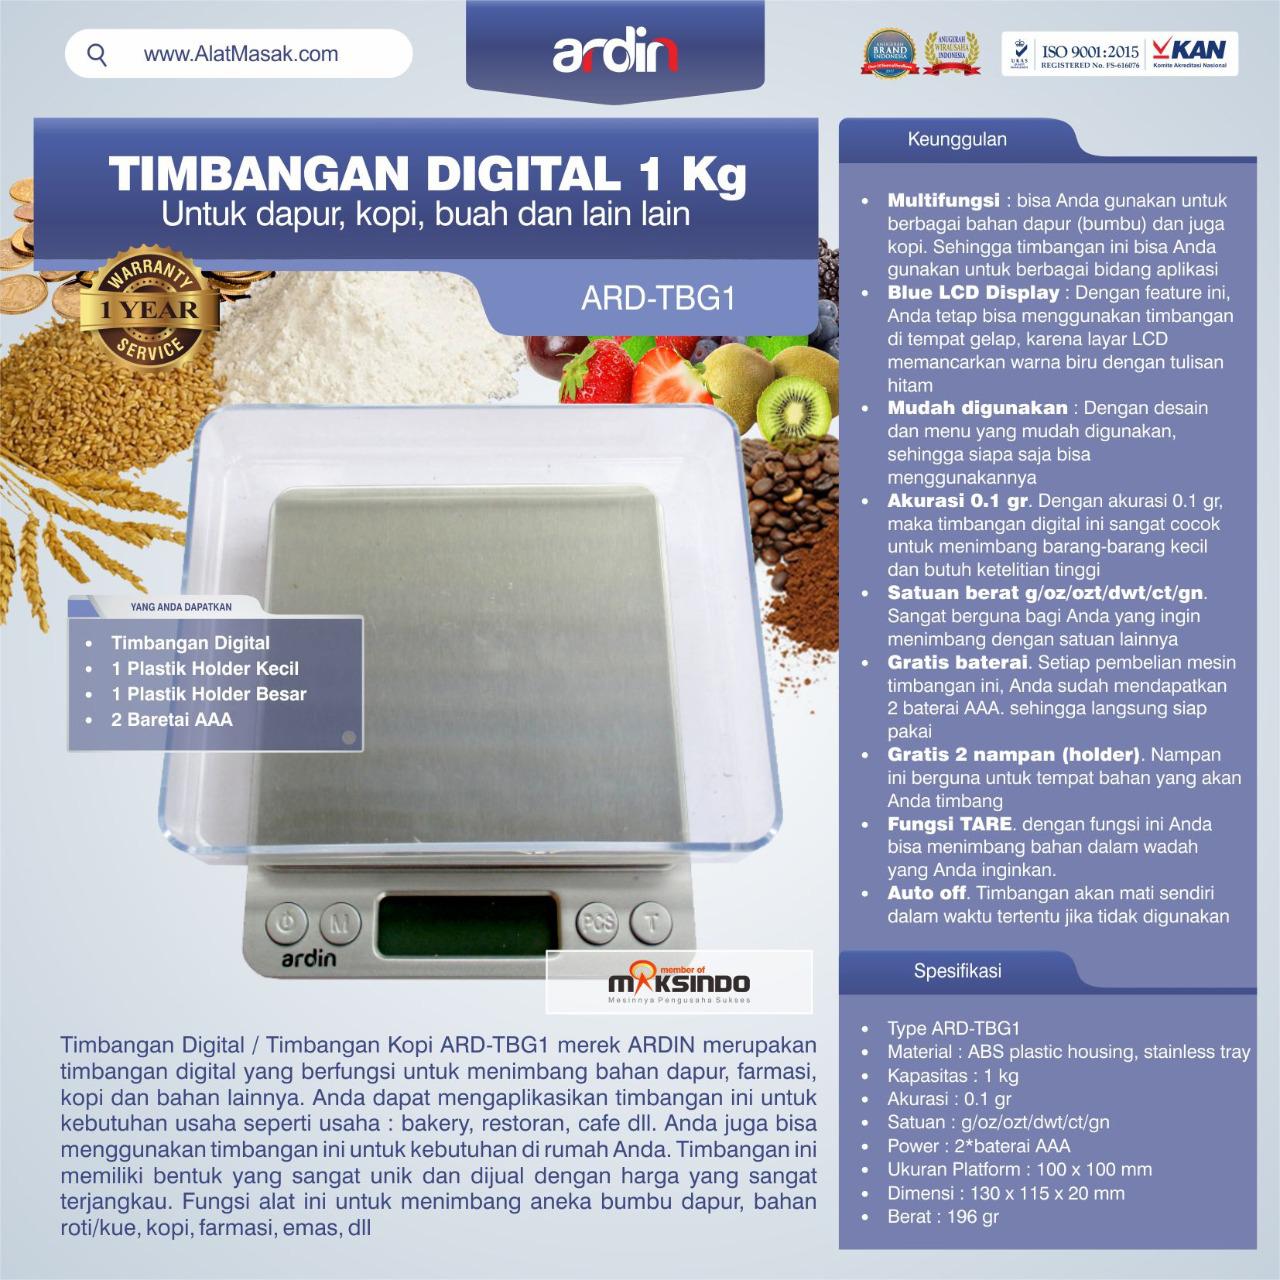 Jual Timbangan Digital Dapur 1 kg / Timbangan Kopi ARD-TBG1 di Bekasi